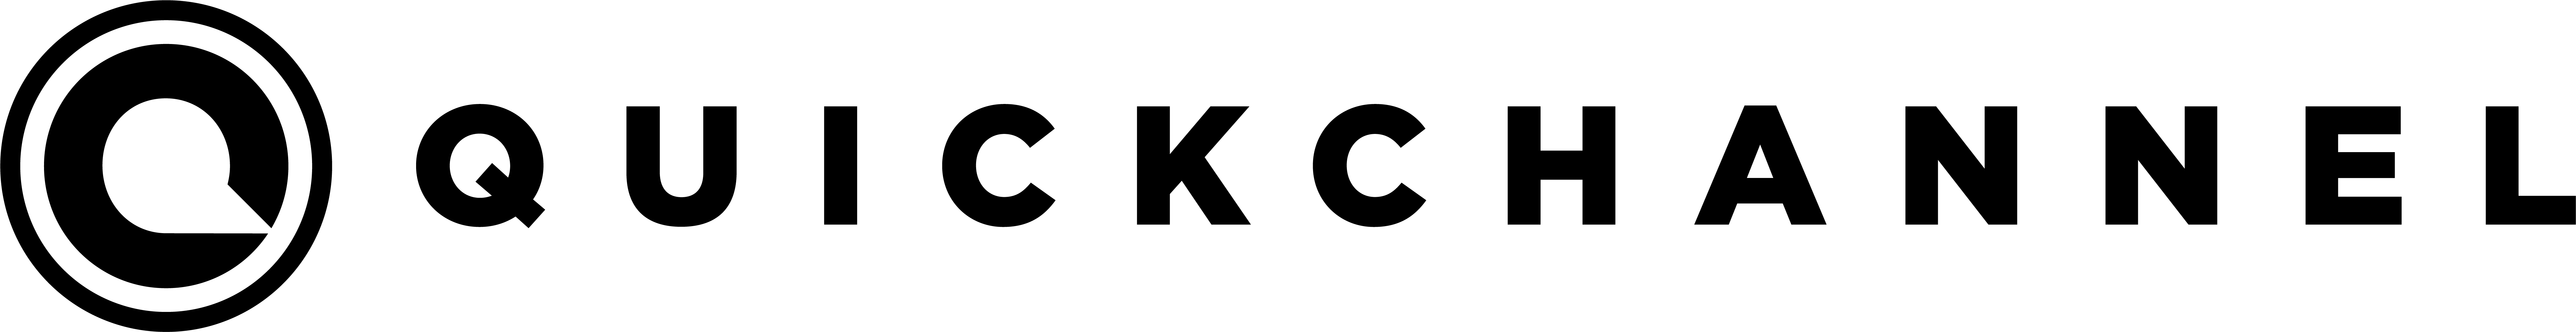 Quickchannel Logo